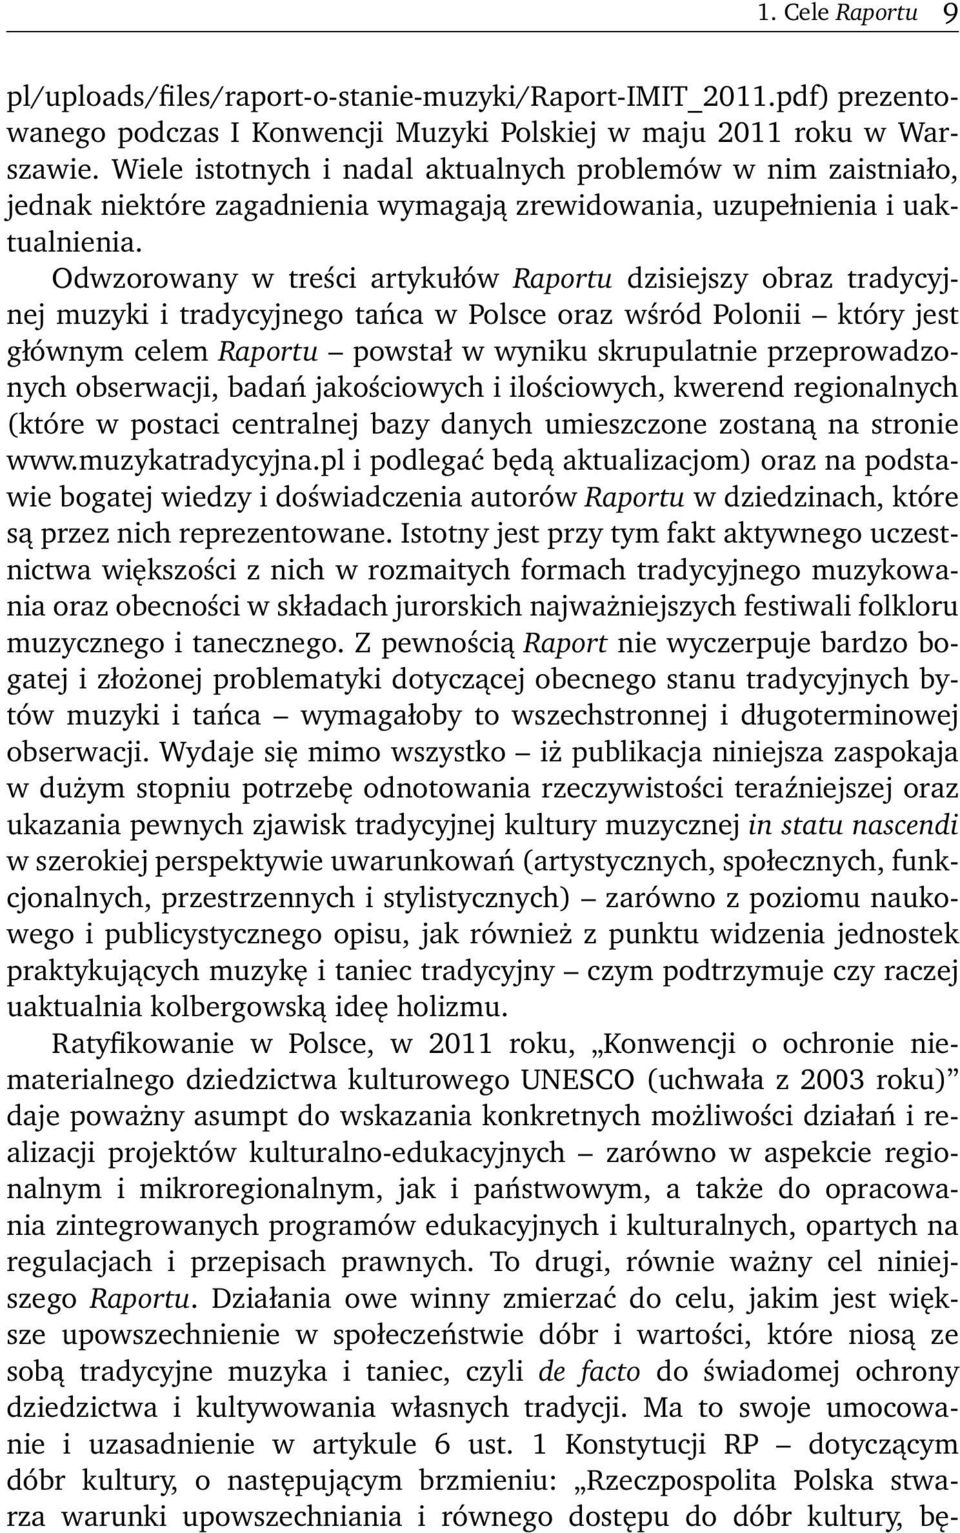 Odwzorowany w treści artykułów Raportu dzisiejszy obraz tradycyjnej muzyki i tradycyjnego tańca w Polsce oraz wśród Polonii który jest głównym celem Raportu powstał w wyniku skrupulatnie